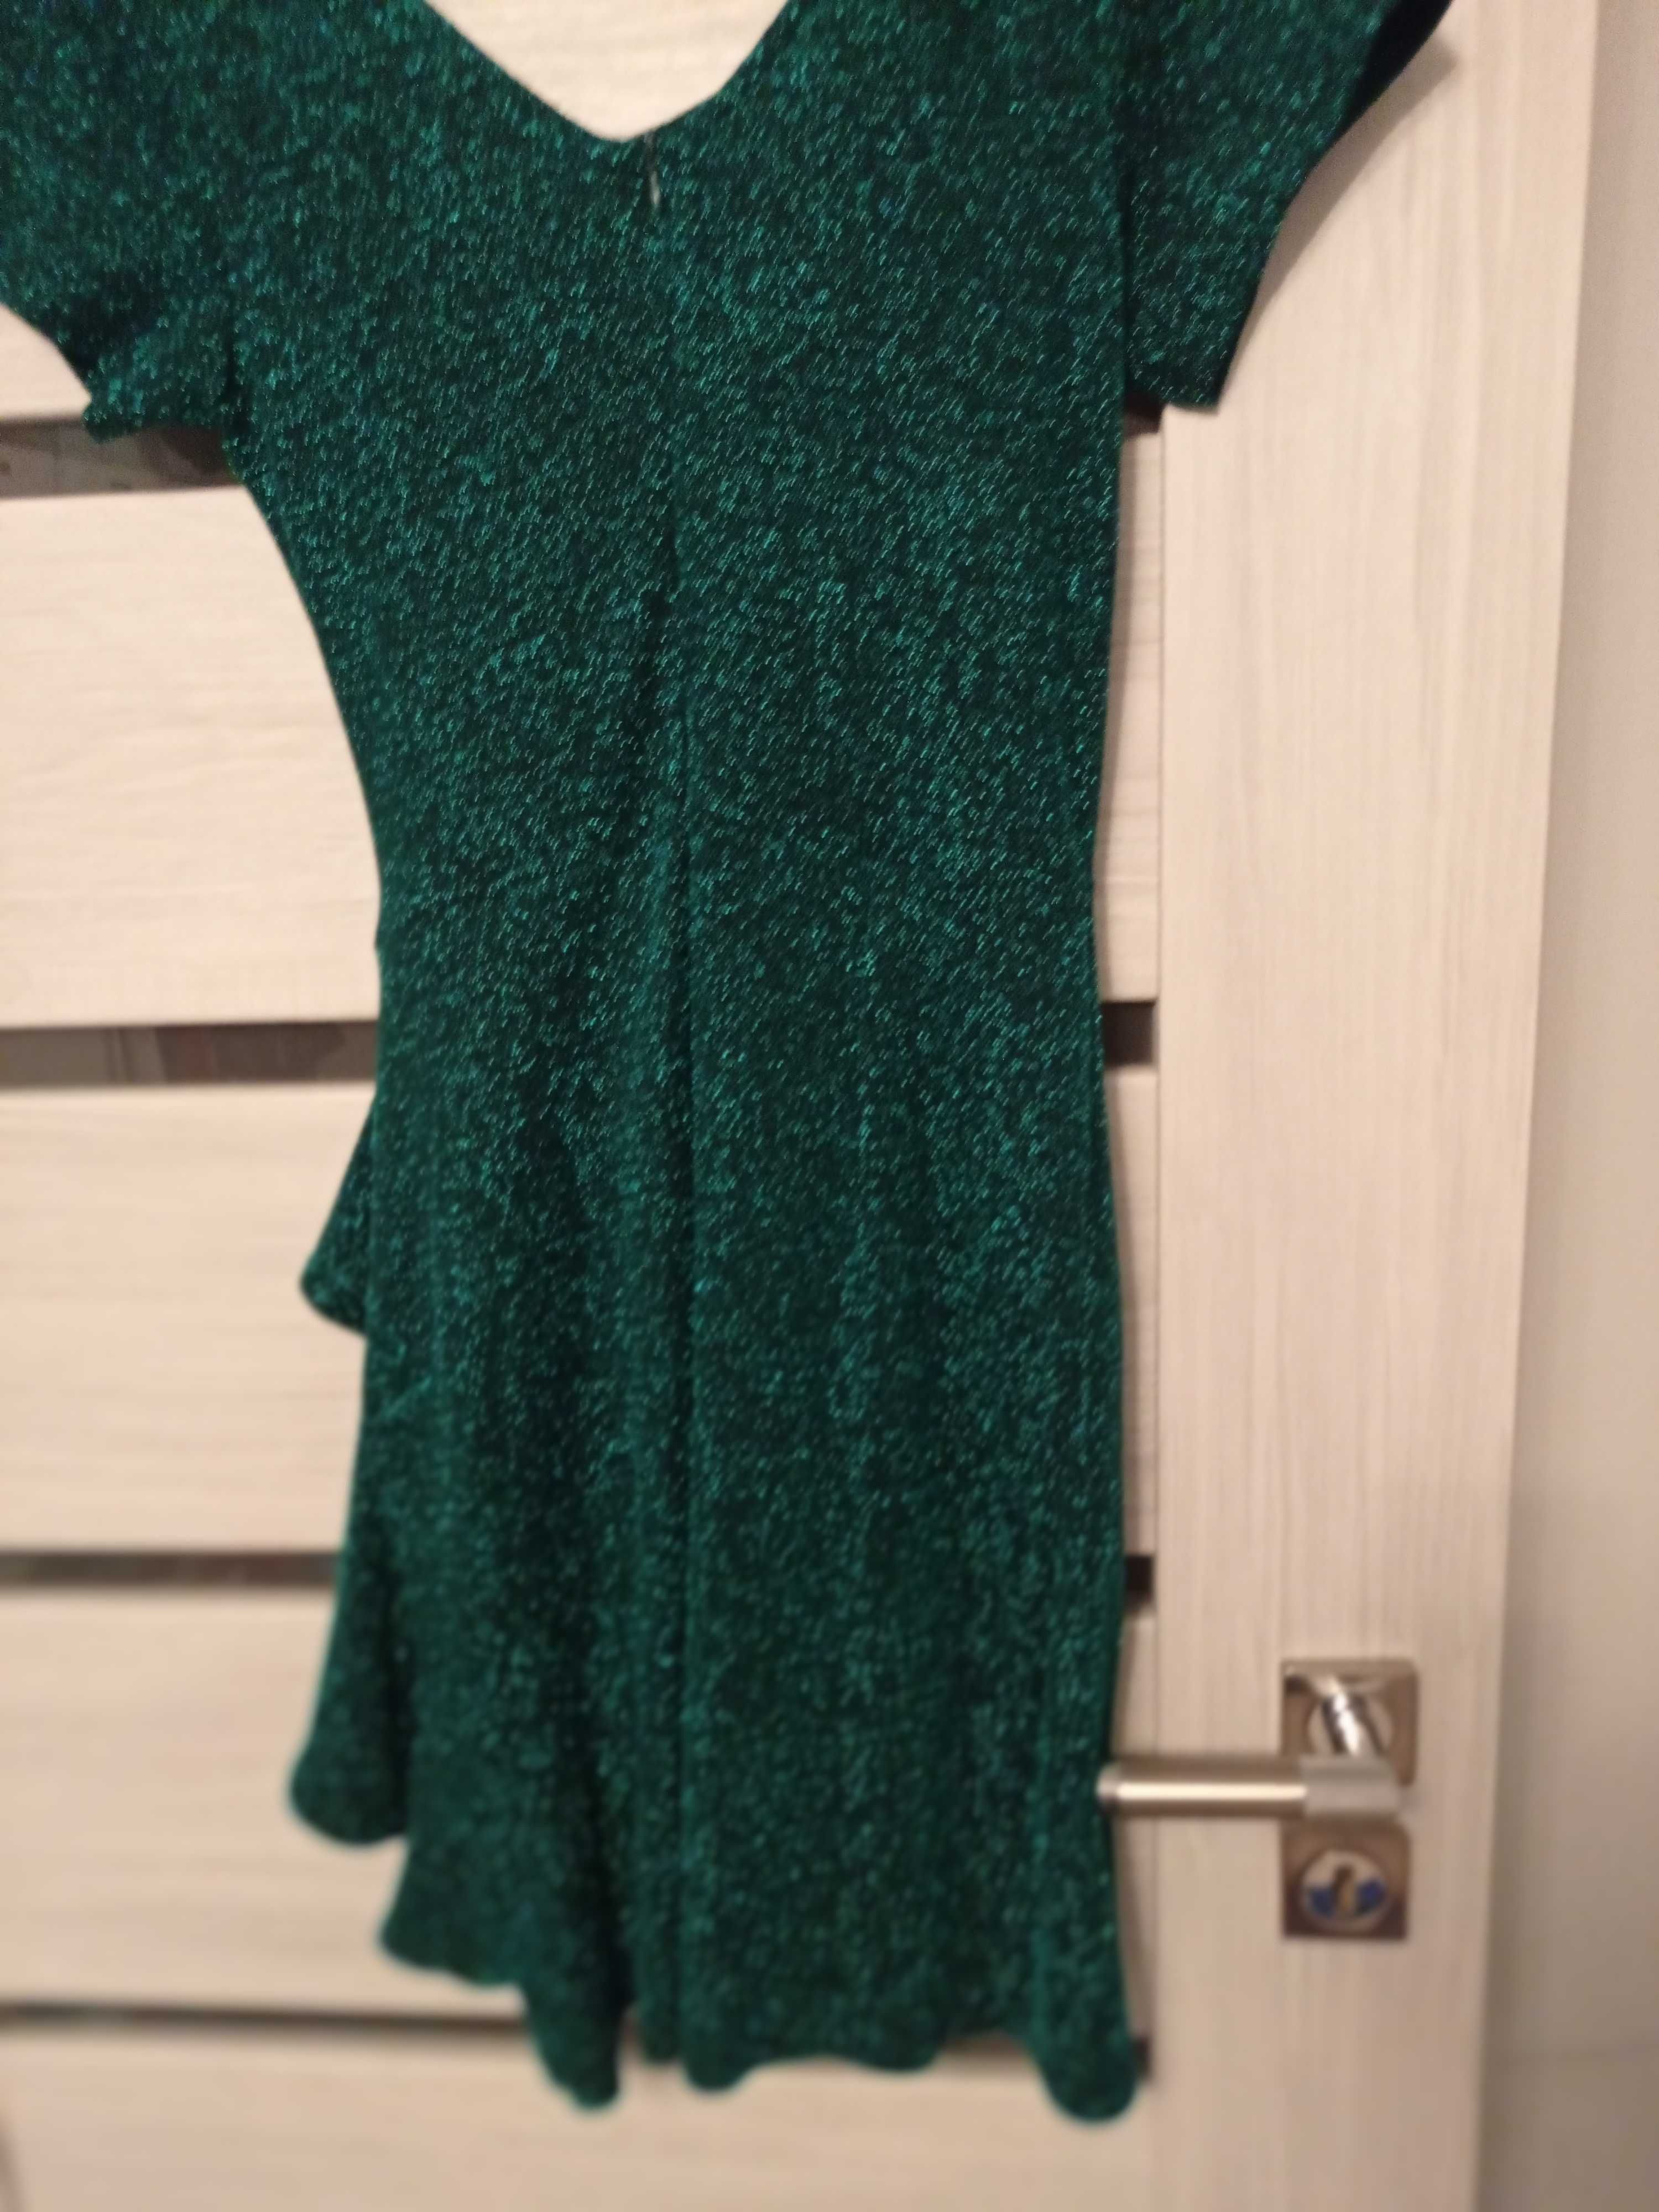 Sukienka,sylwester karnawał,błyszcząca , zielono-czarny rozmiar 40